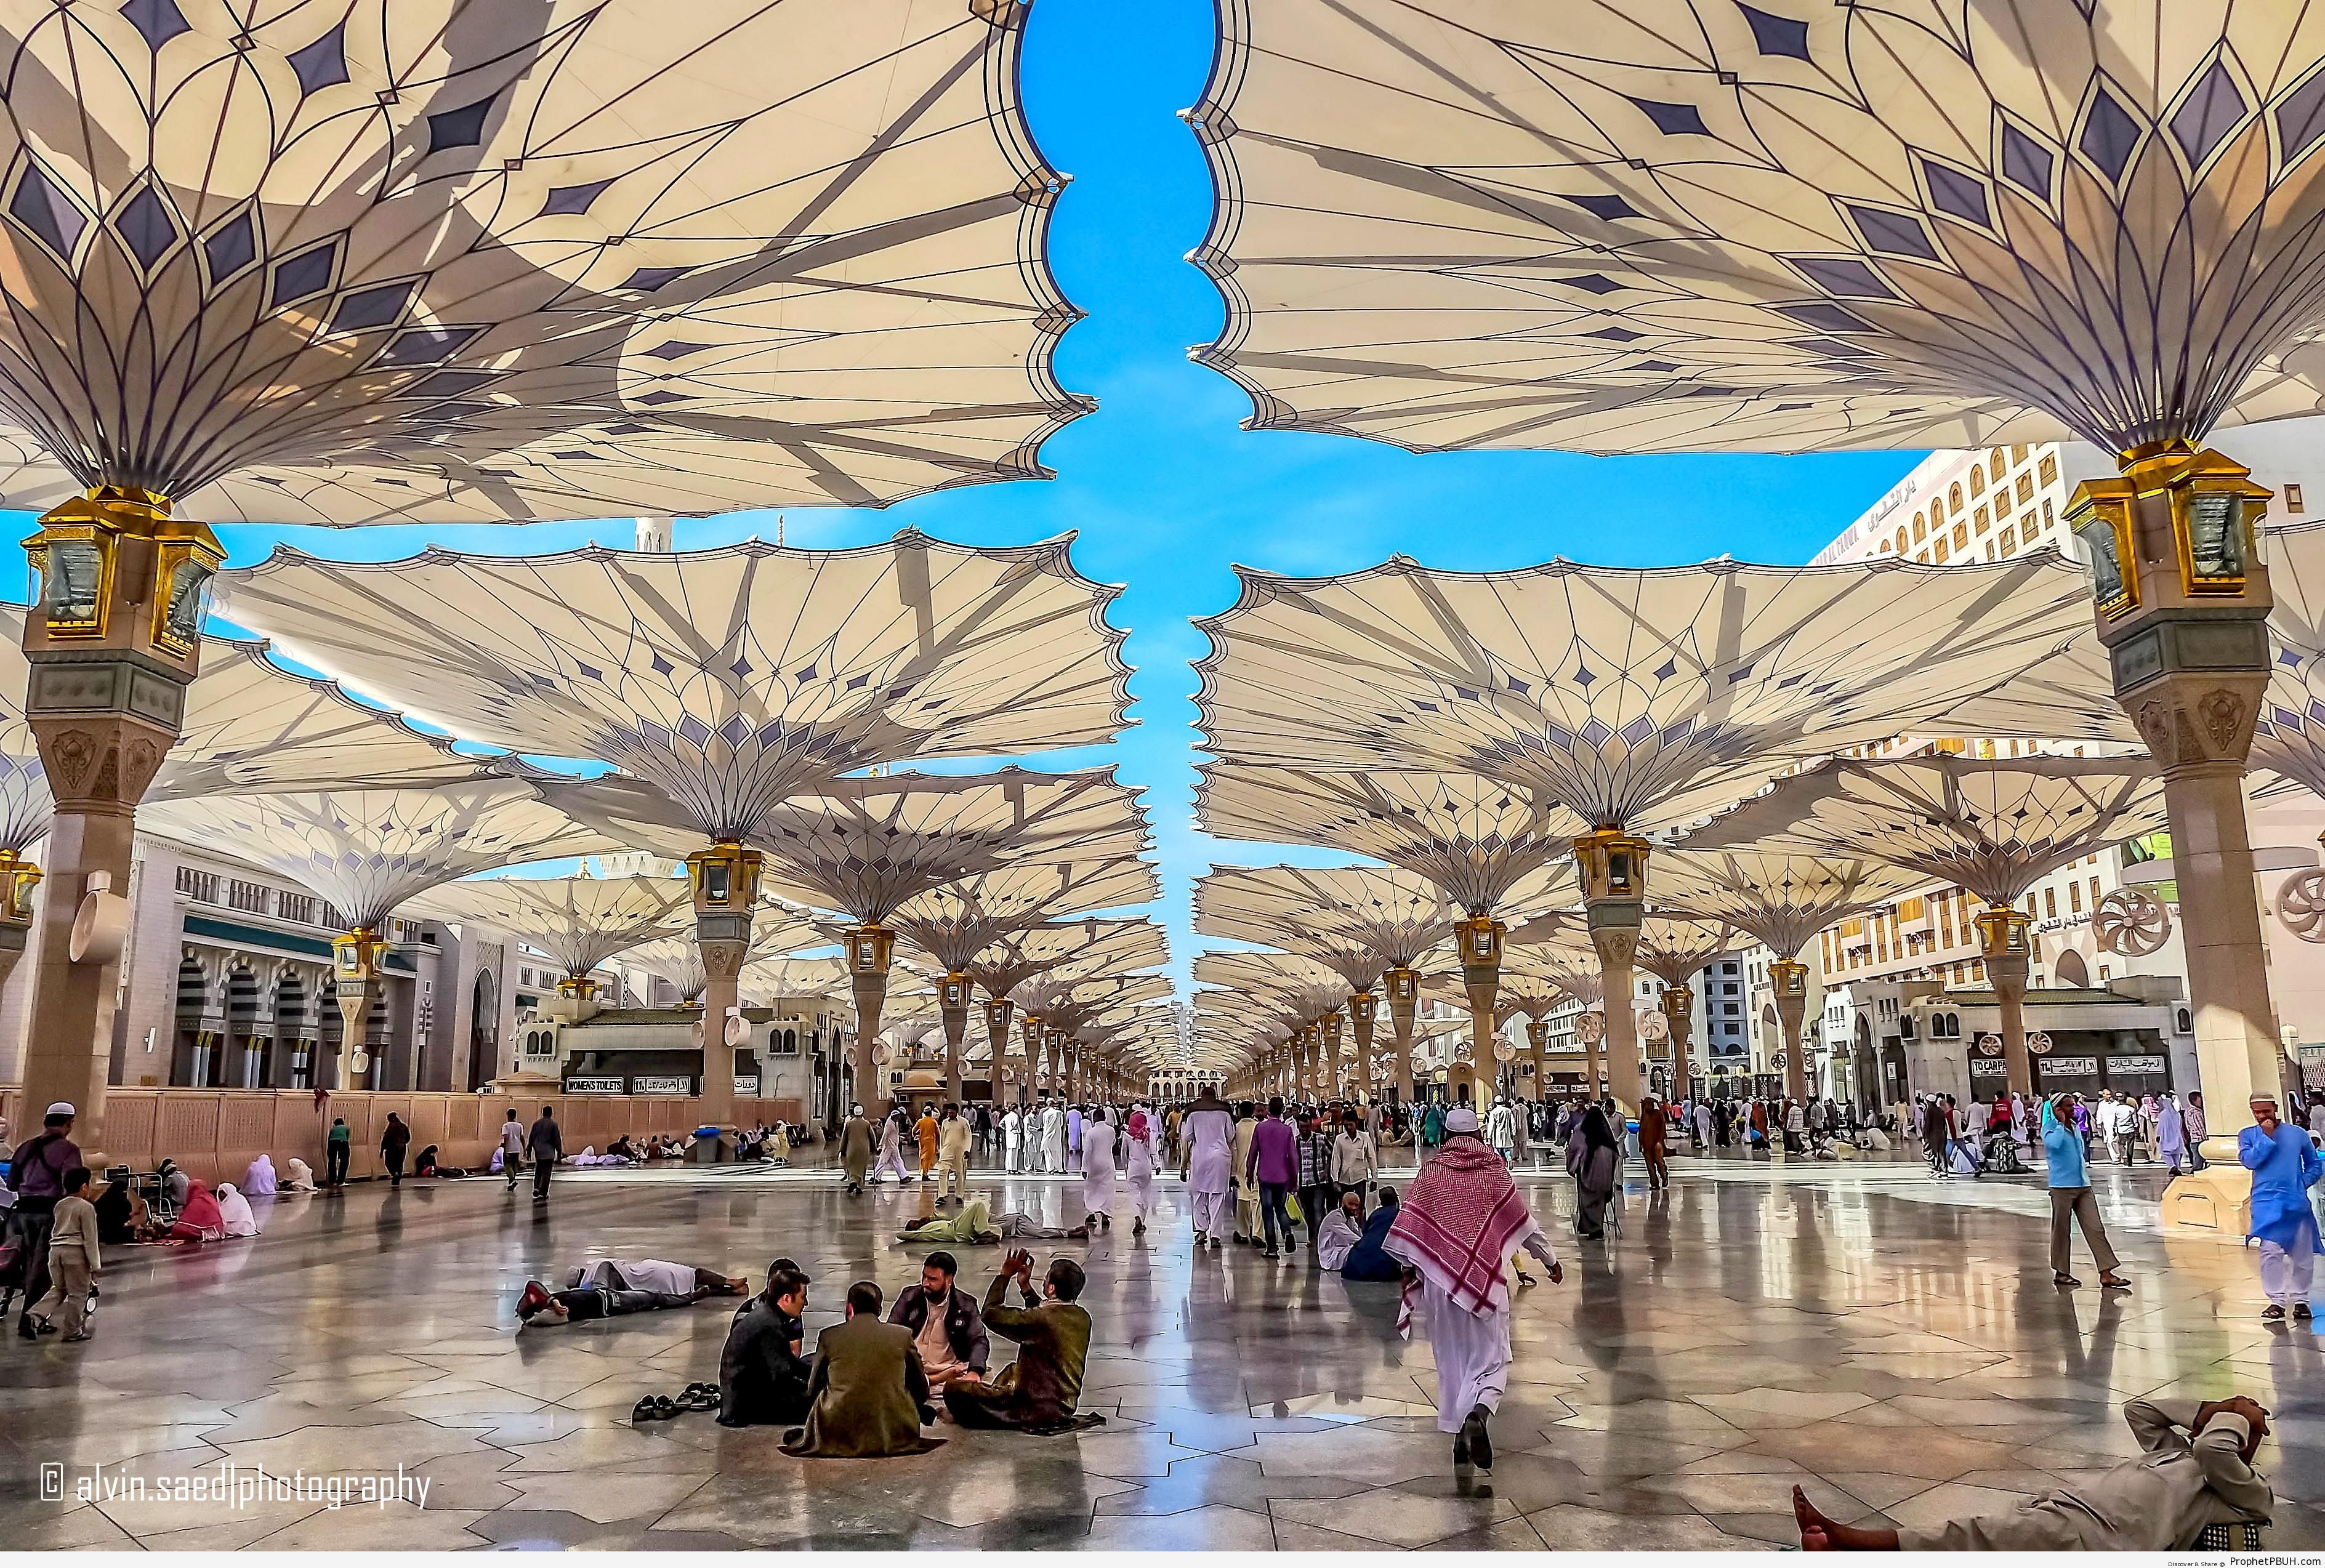 Umbrellas at al-Masjid an-Nabawi in Madinah, Saudi Arabia - Al-Masjid an-Nabawi (The Prophets Mosque) in Madinah, Saudi Arabia -Picture